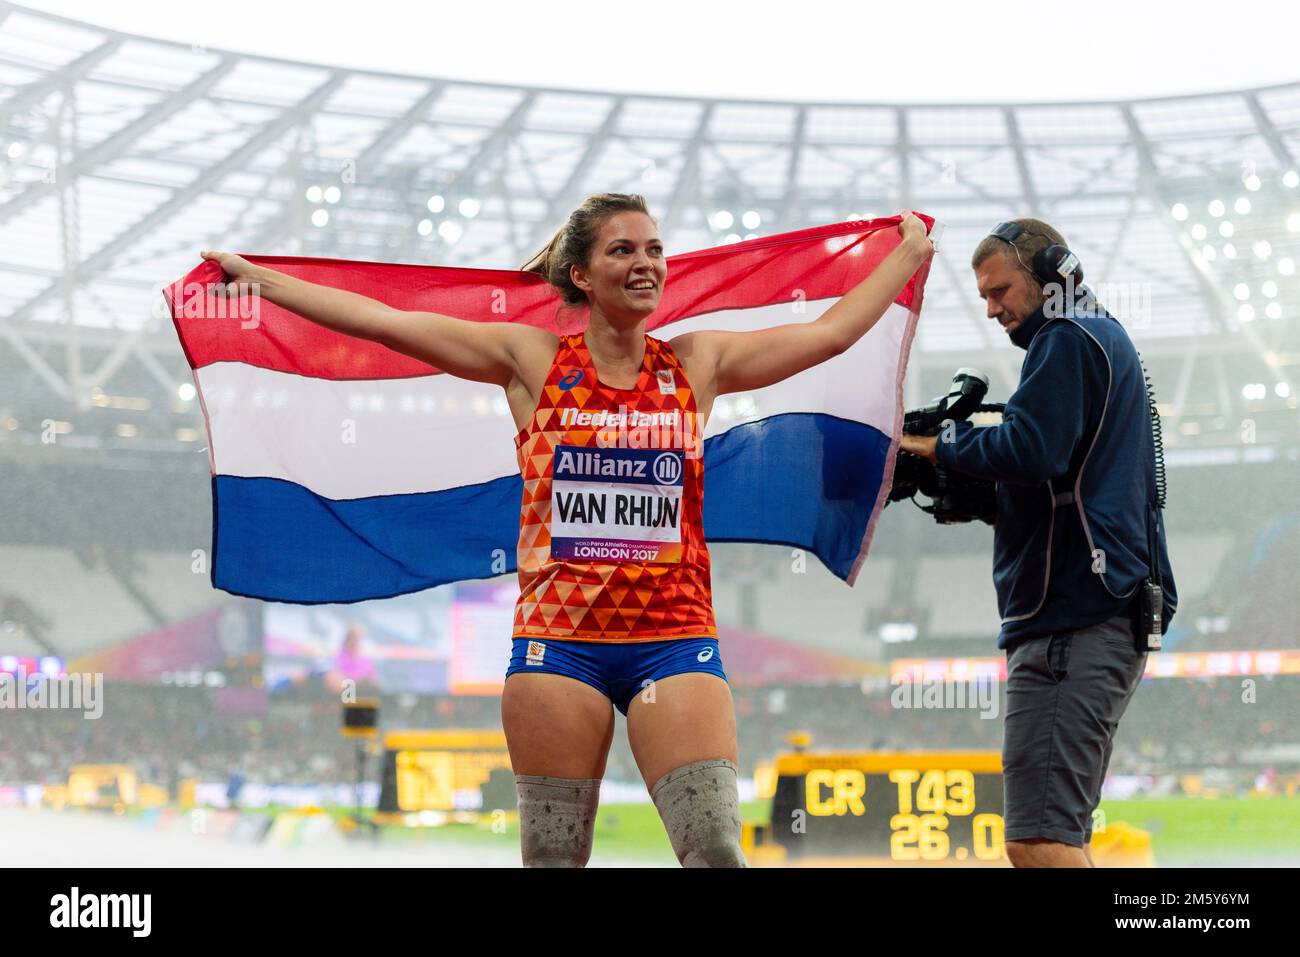 Marlou van Rhijn feiert den Gewinn von T44 T43 200m Gold bei den Para Athletics World Championships 2017 im London Stadium. Holländische Flagge. Medienkamera Stockfoto